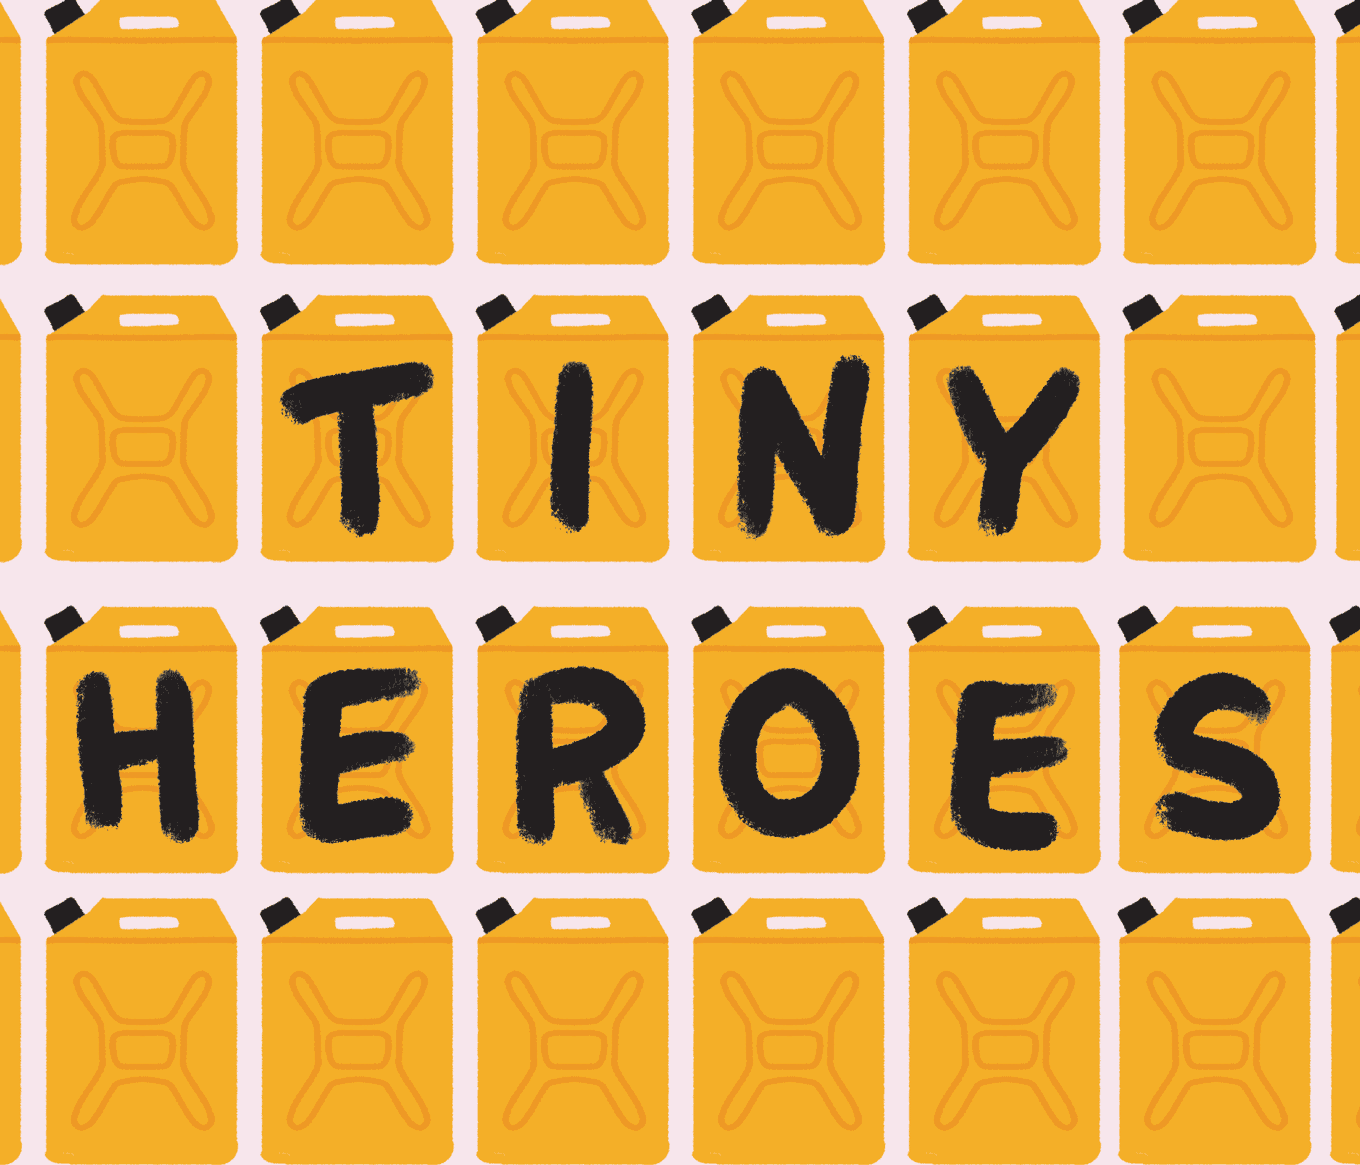 Charity Water Tiny Heroes geschreven op gele jerrycans die worden gebruikt voor het dragen van schoon water